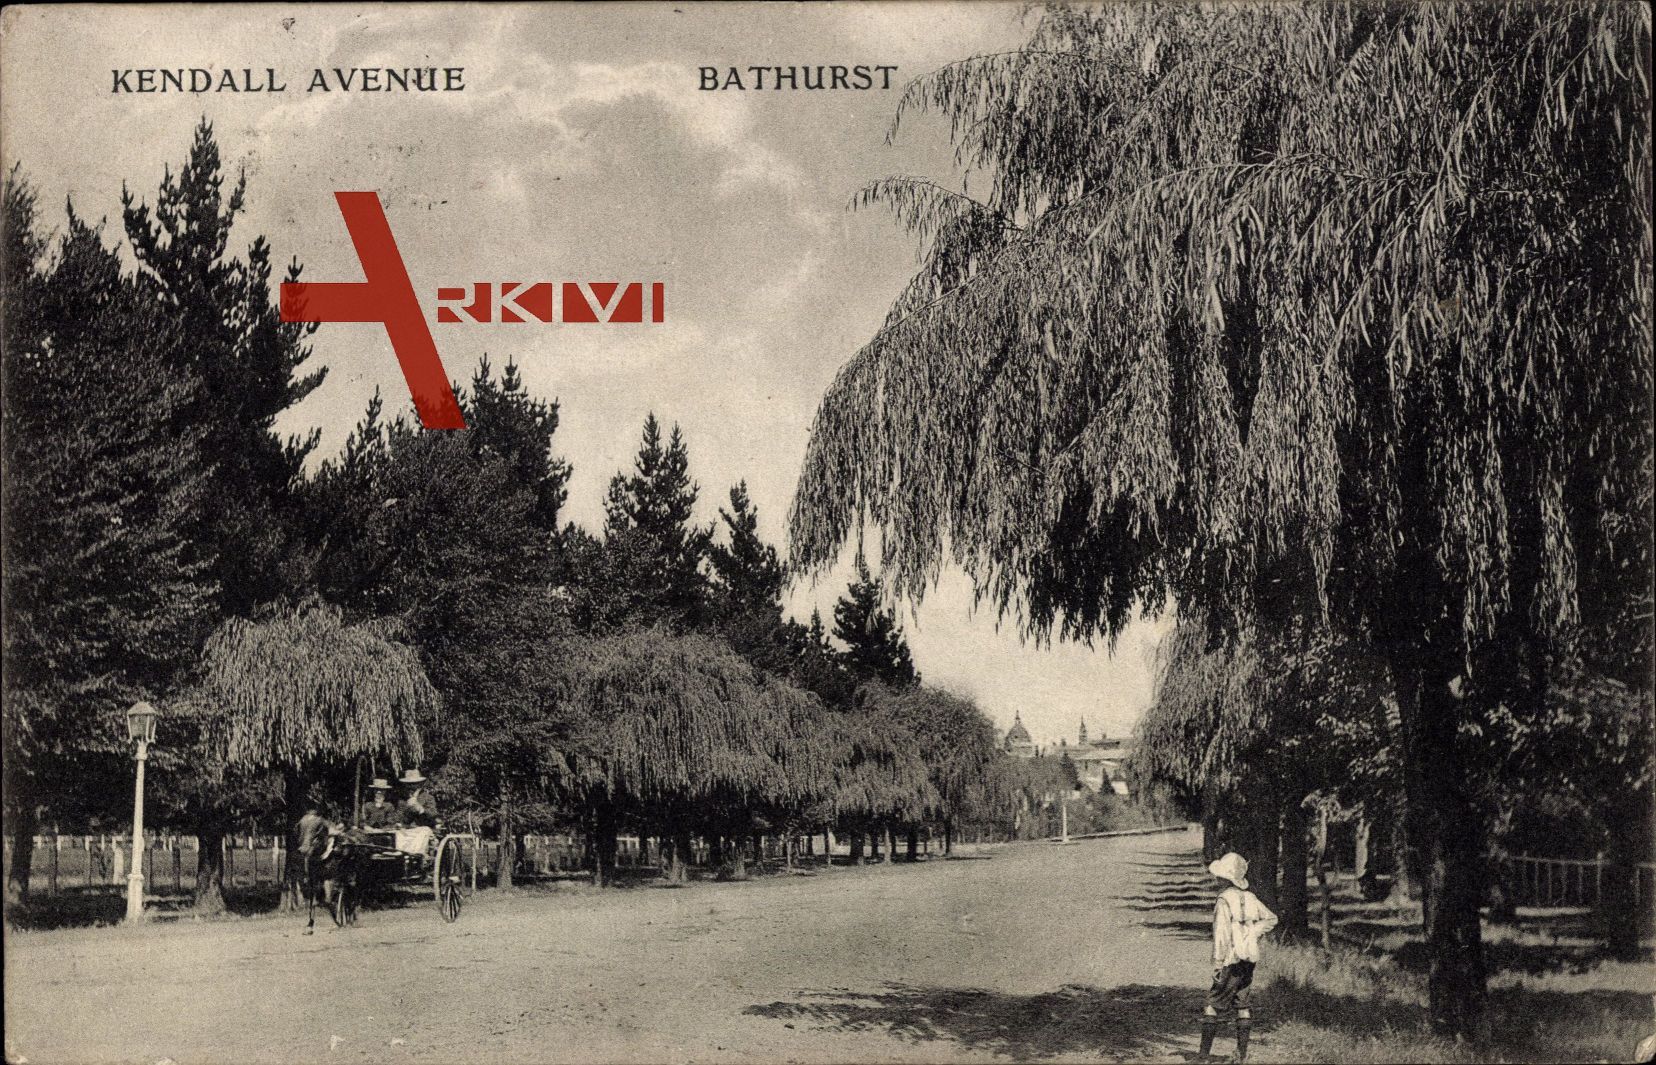 Bathurst Australien, Kendall Avenue, Kutsche, Bäume